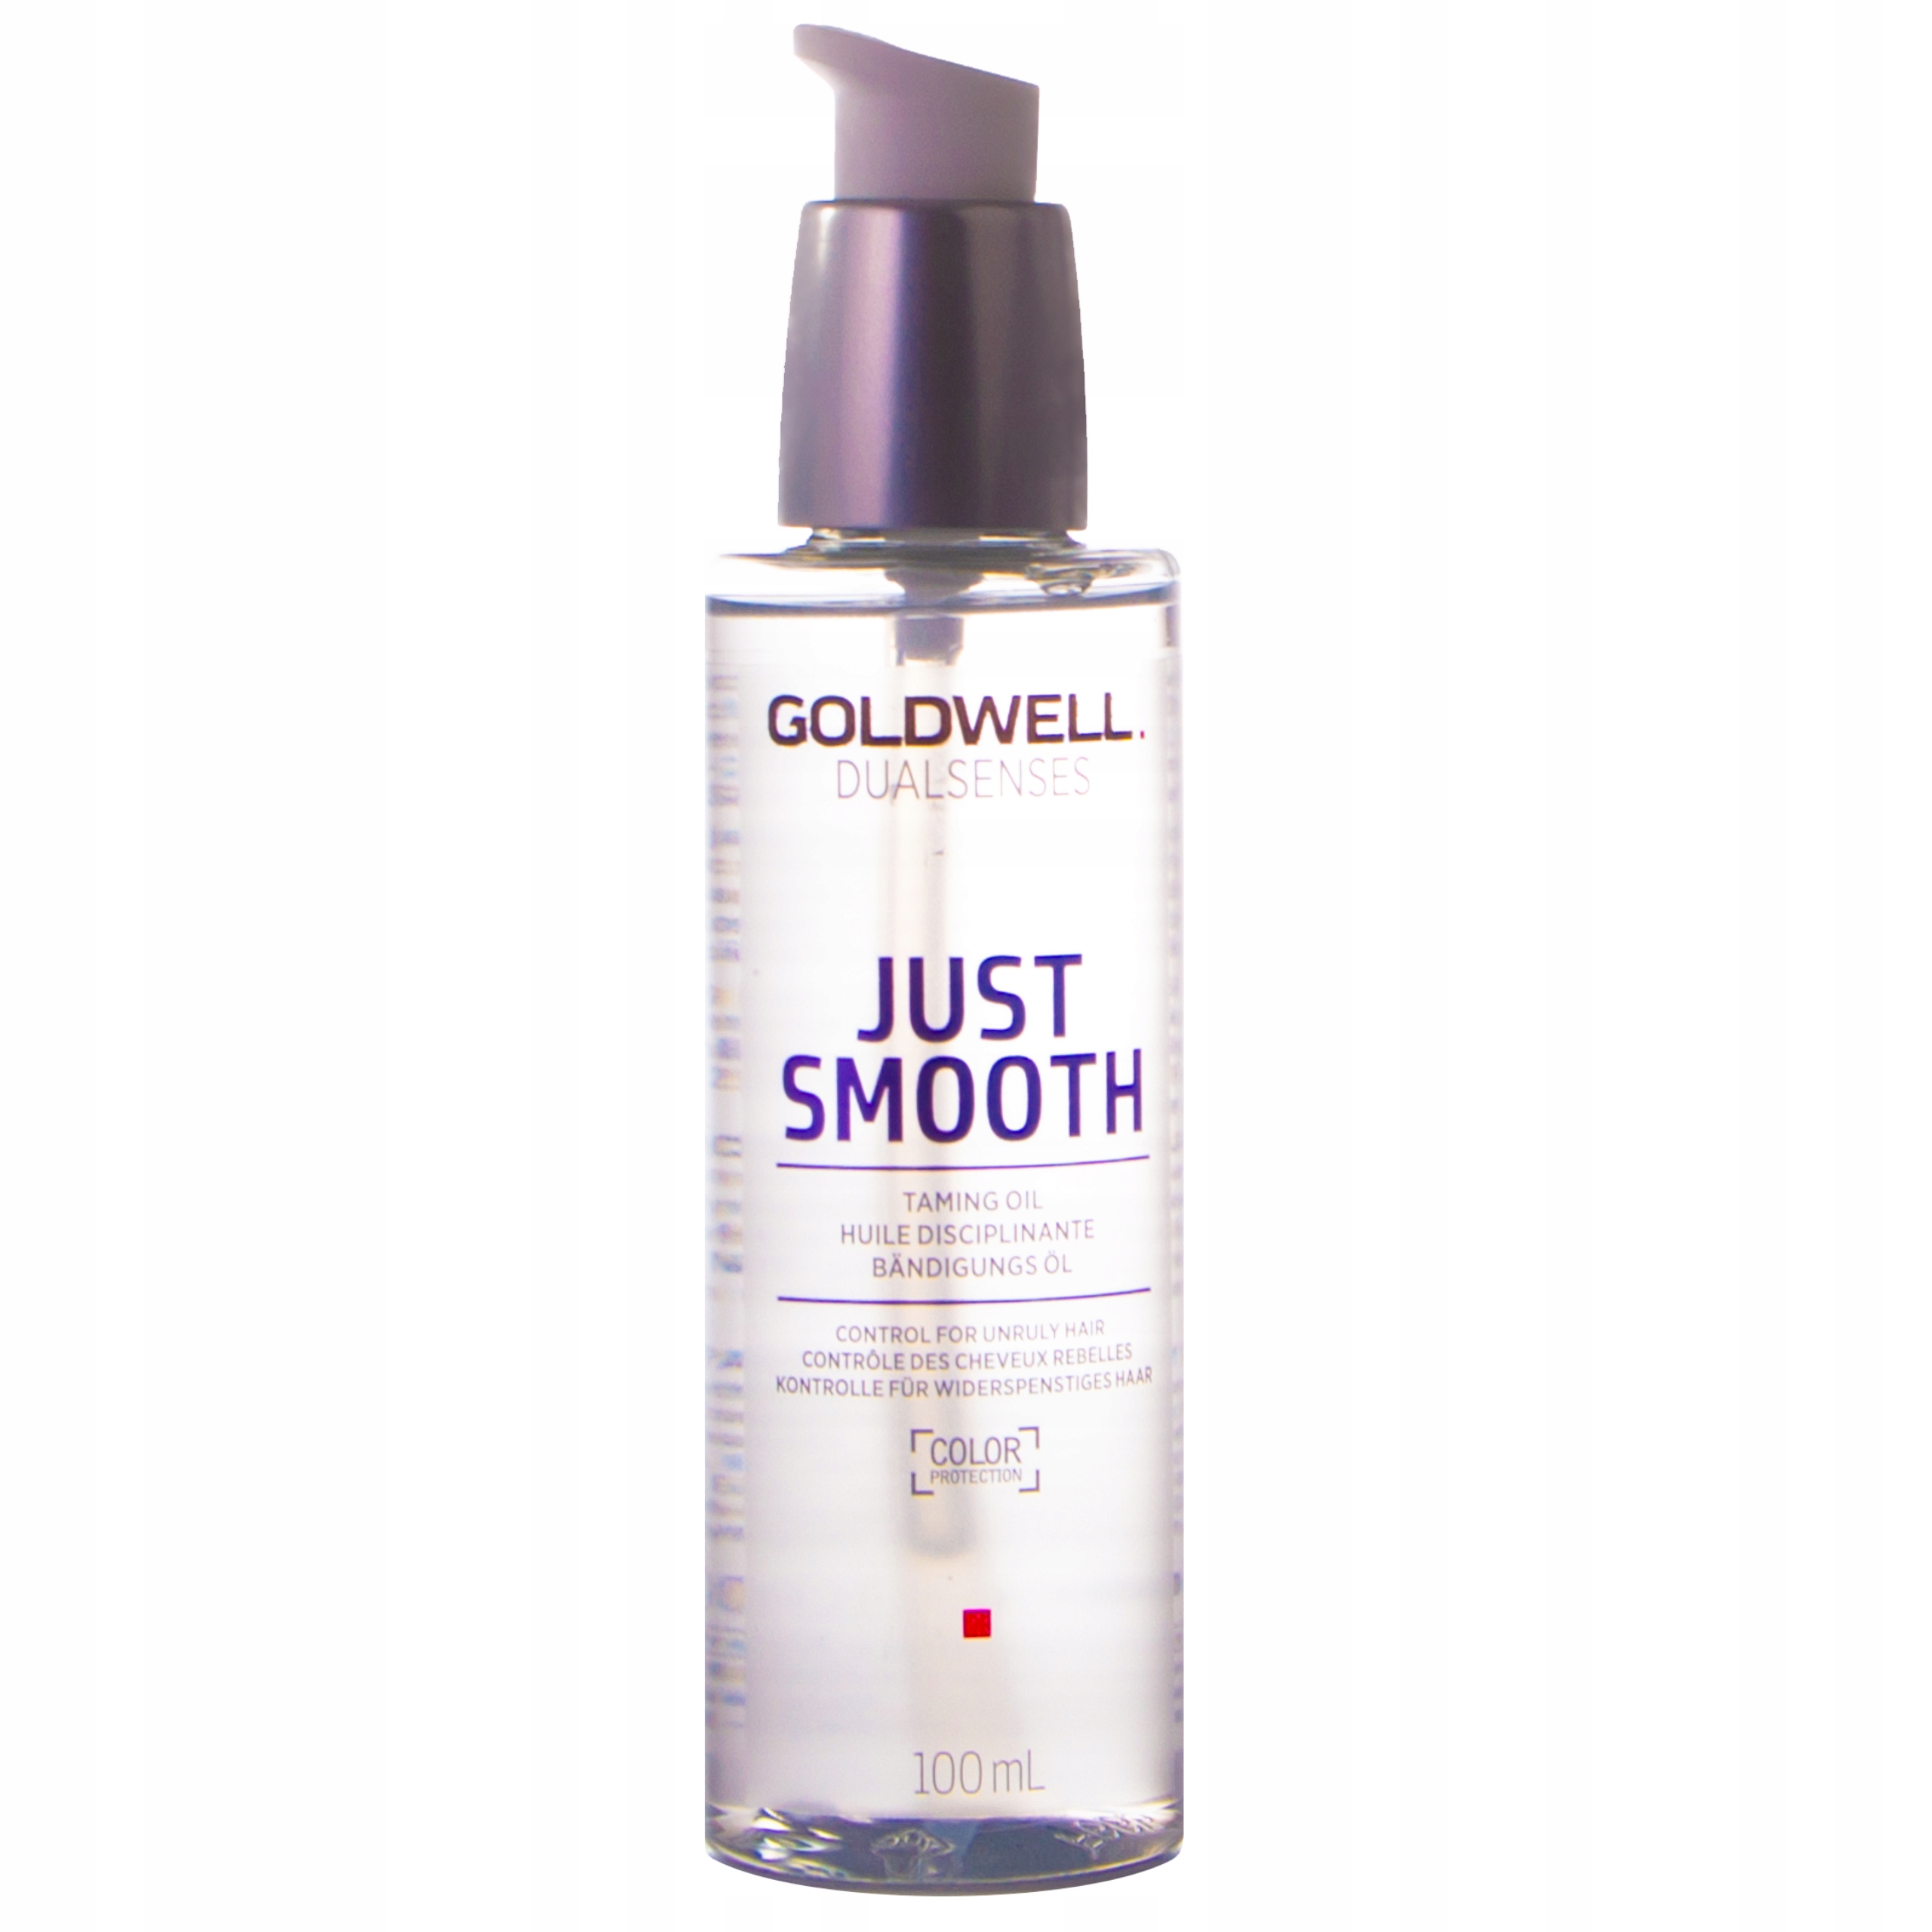 goldwell dualsenses just smooth wygłądzający olejek do włosów 100 ml